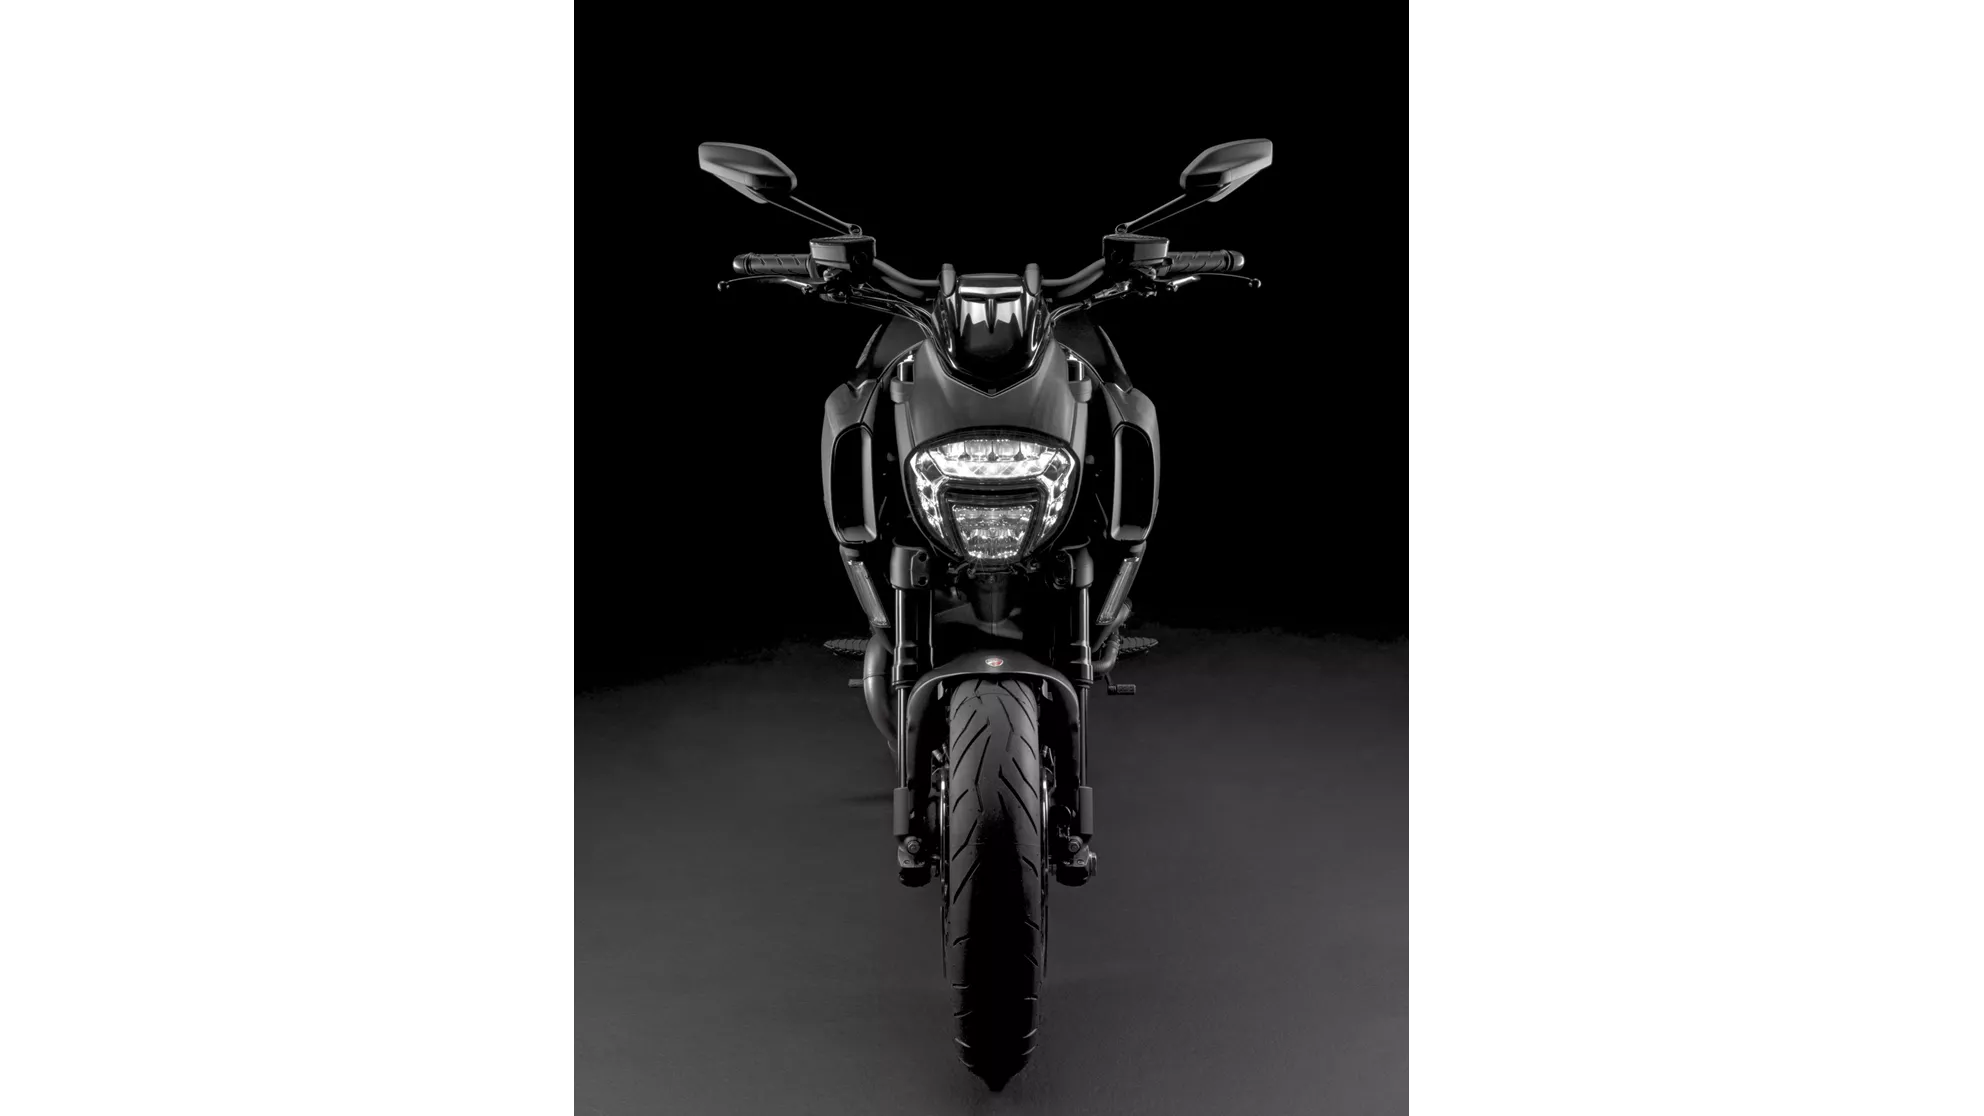 Ducati Diavel 1200 Dark - Image 5